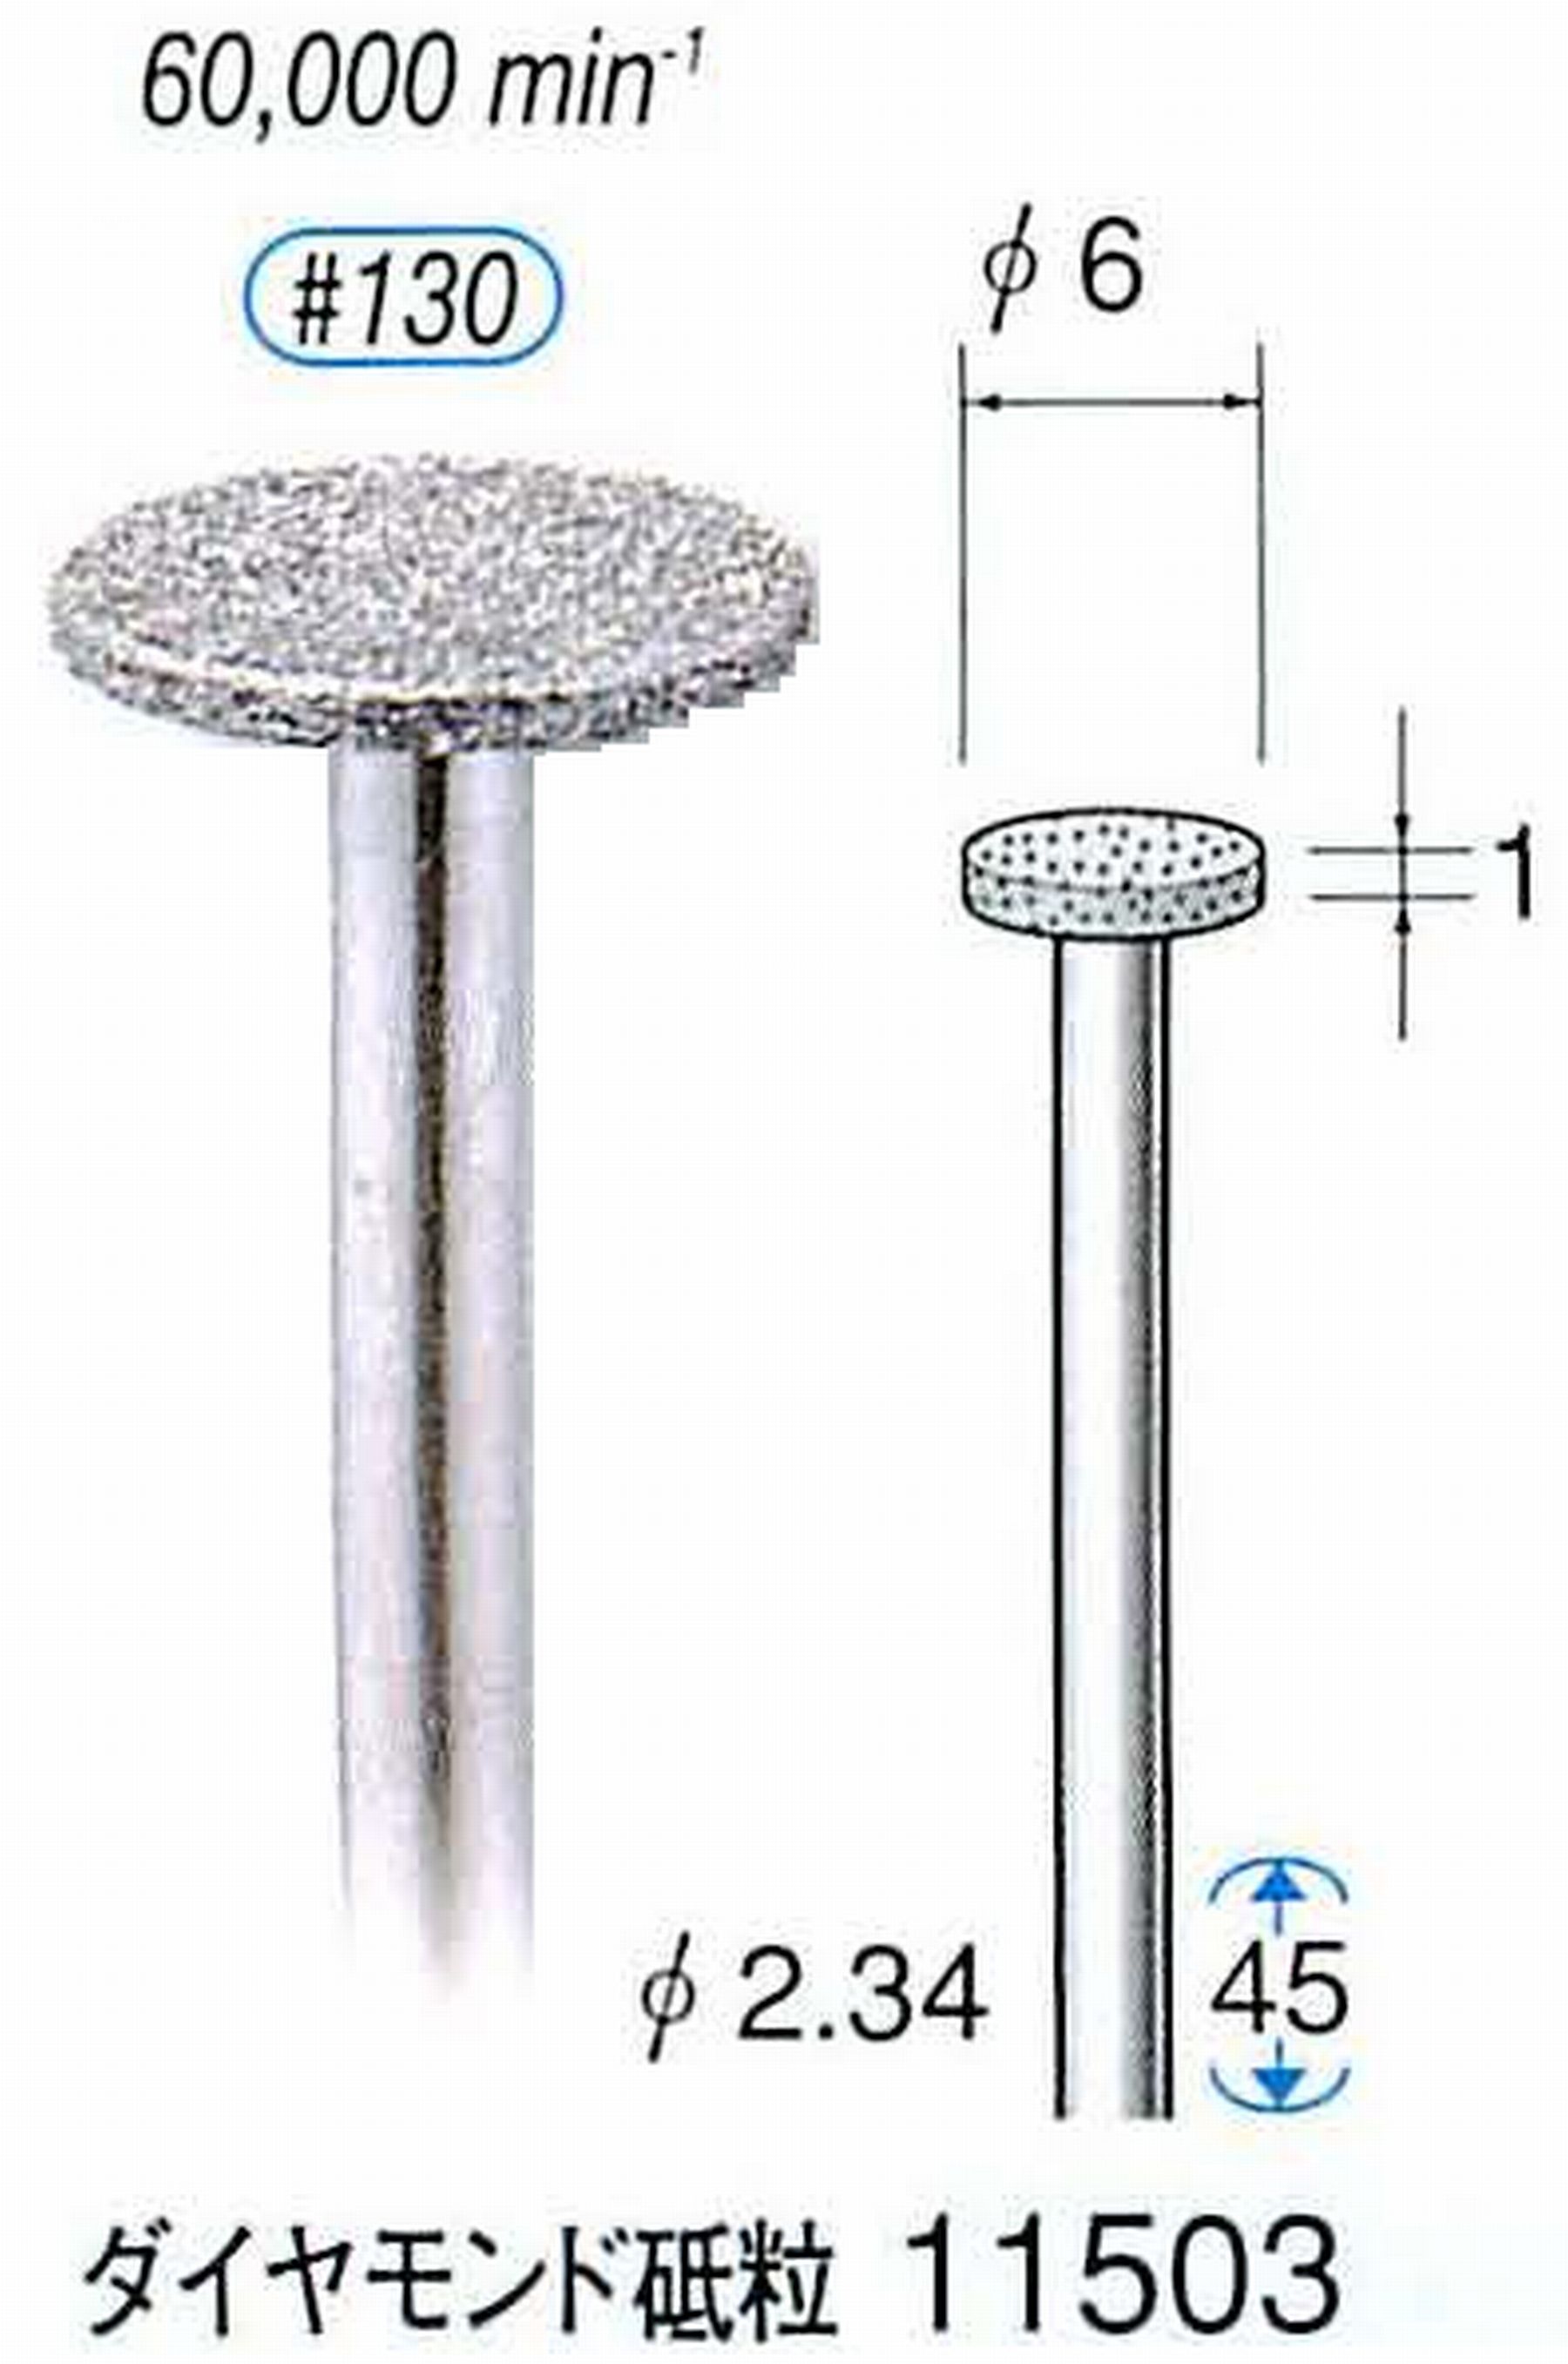 ナカニシ/NAKANISHI 電着ダイヤモンドバー ダイヤモンド砥粒 軸径(シャンク)φ2.34mm 11503